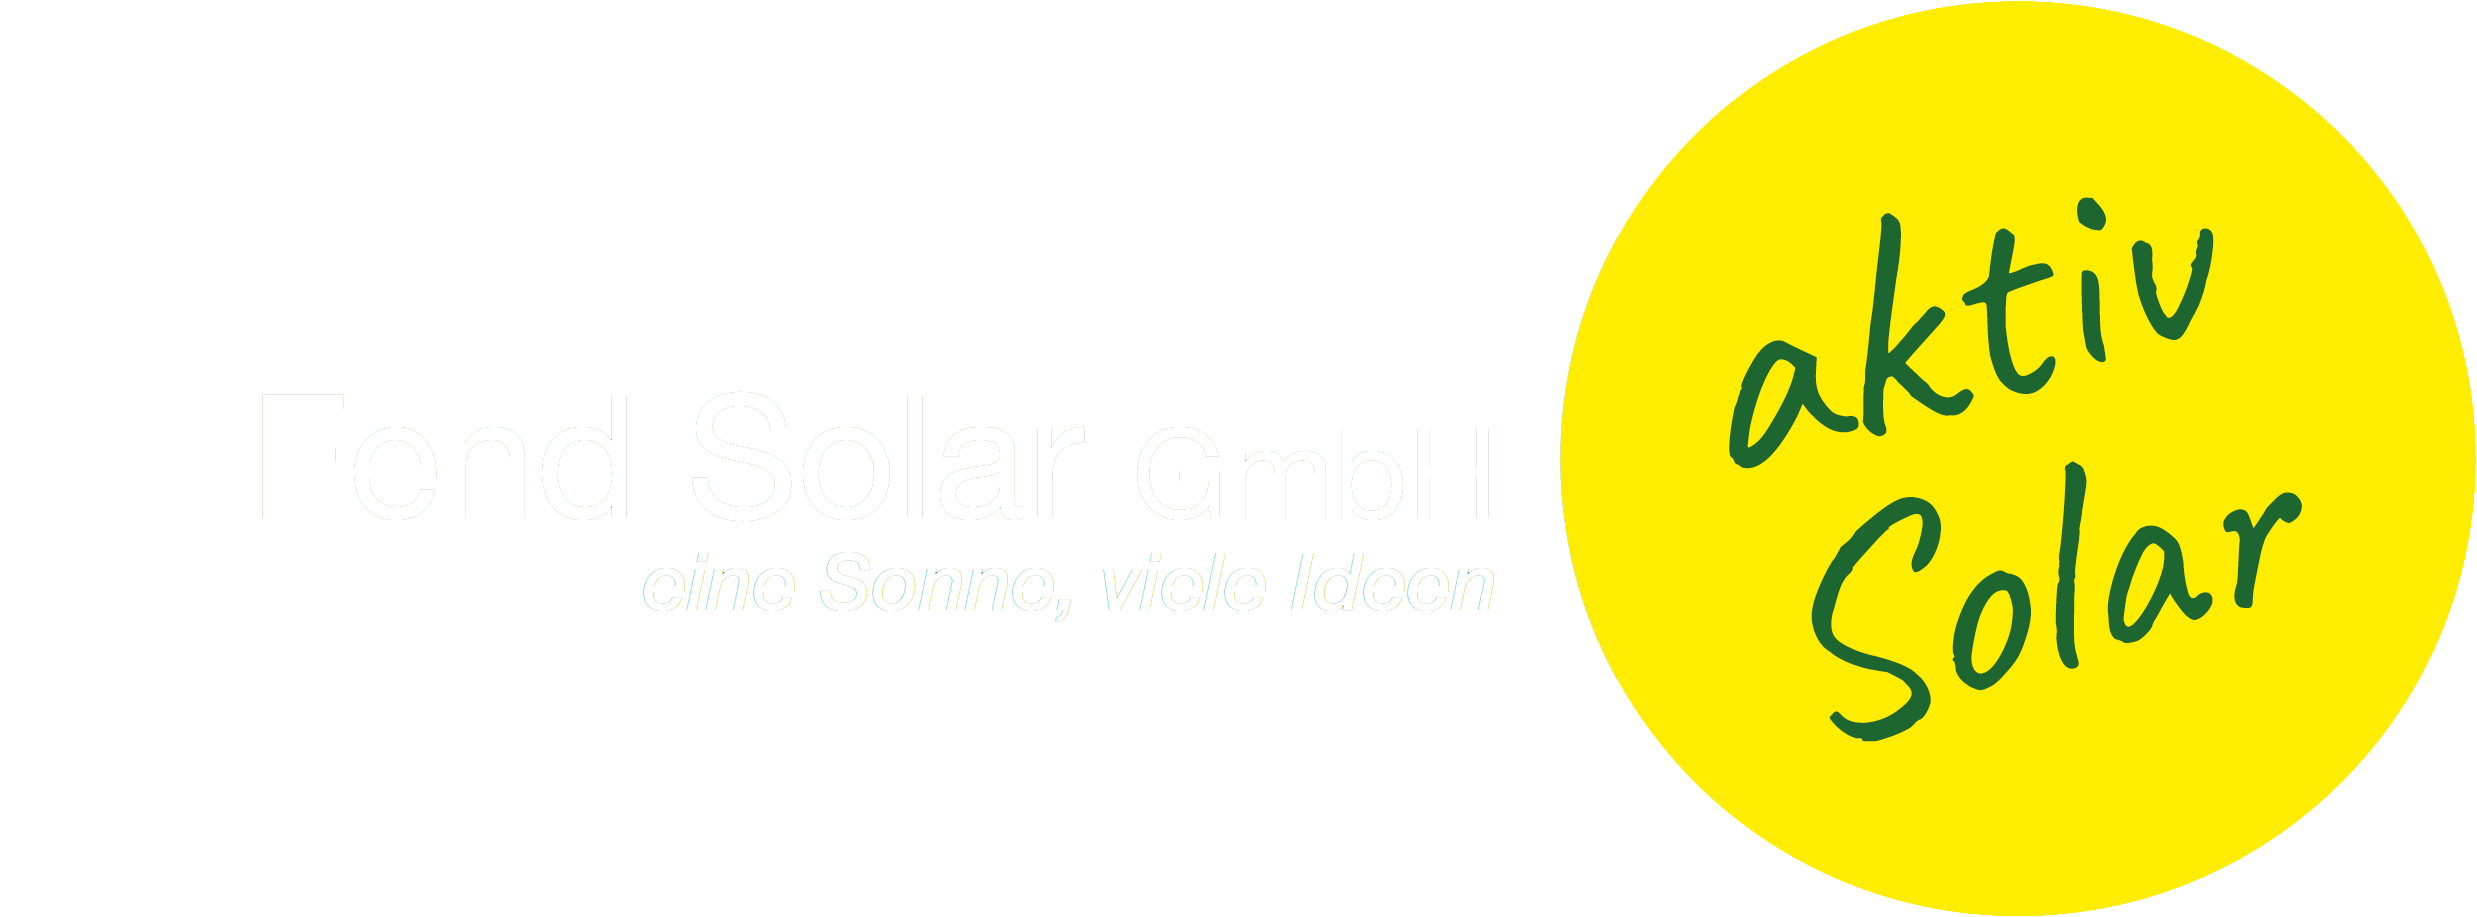 fend-solar.de